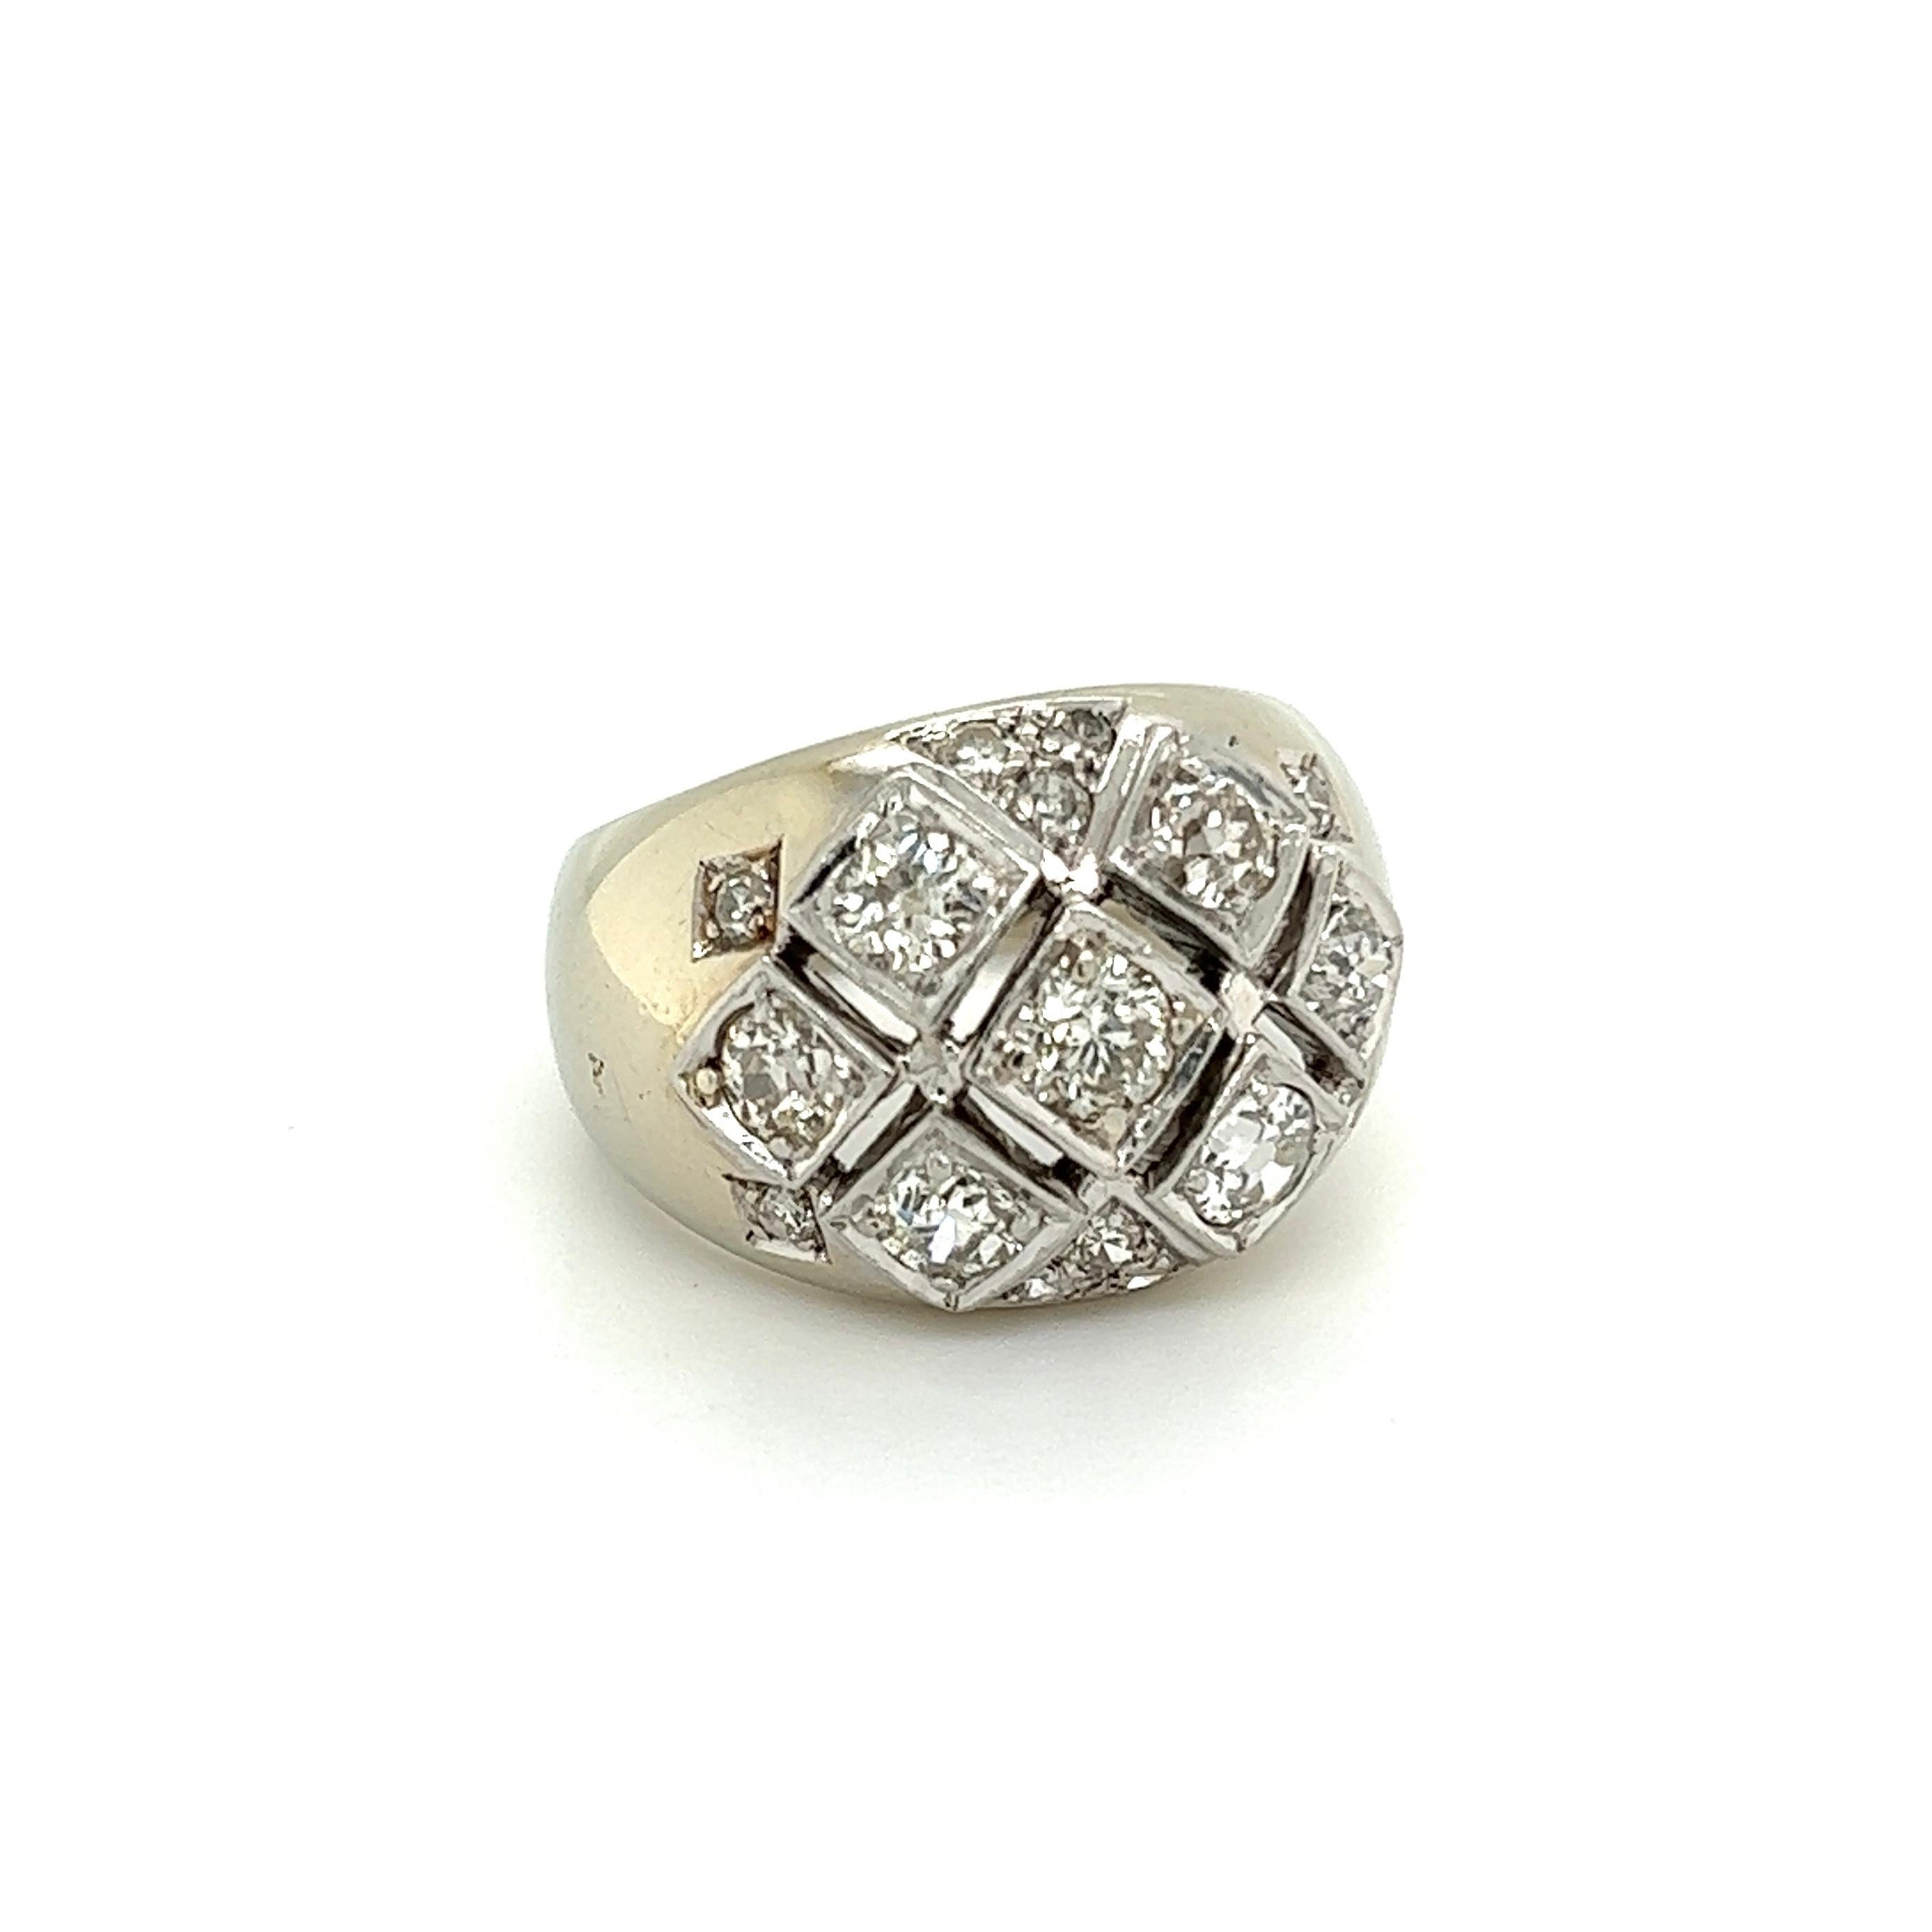 Einfach schön! Auffallend und fein detailliert Diamant Gold 14mm Dome Cluster Ring. Handbesetzt mit verstreuten Diamanten im Altschliff, Gewicht ca. 1,40 tcw. Maße: ca. 0,90